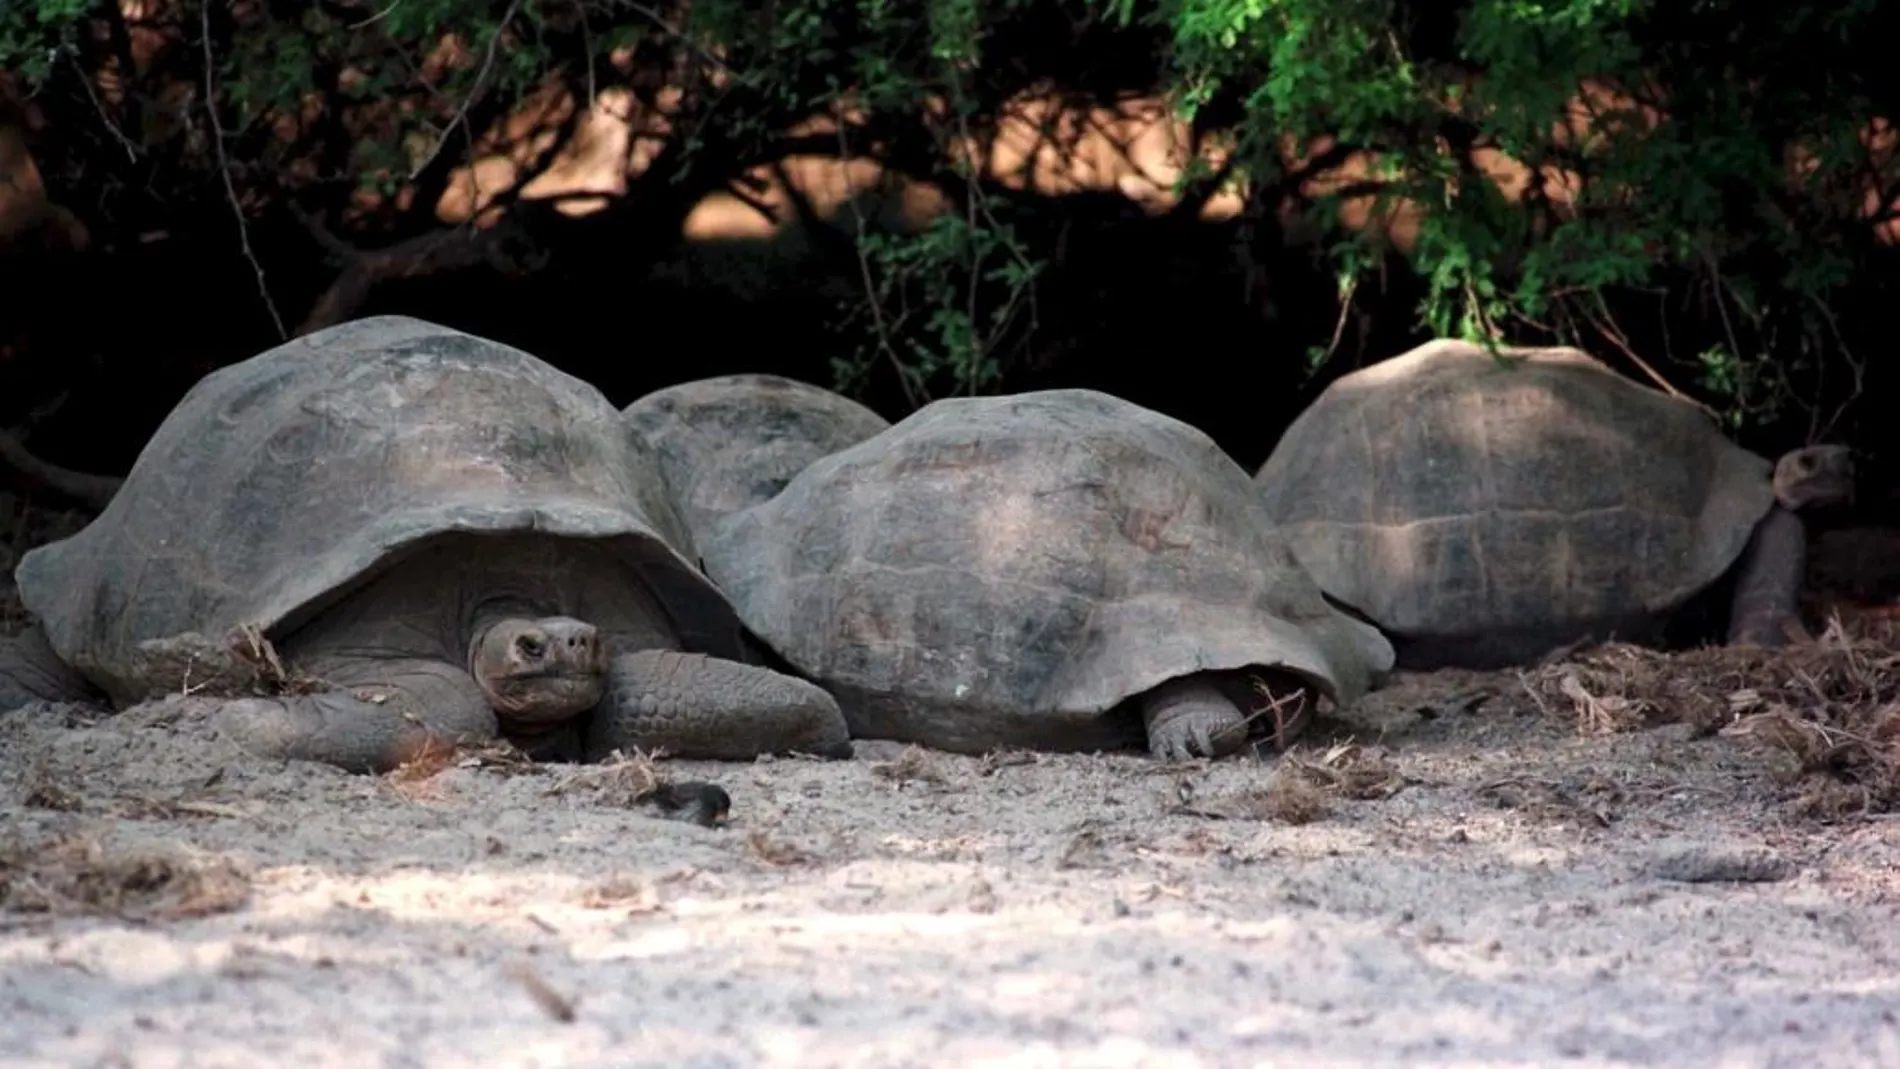 Tortugas en una de las islas del arhipiélago de las Galápagos